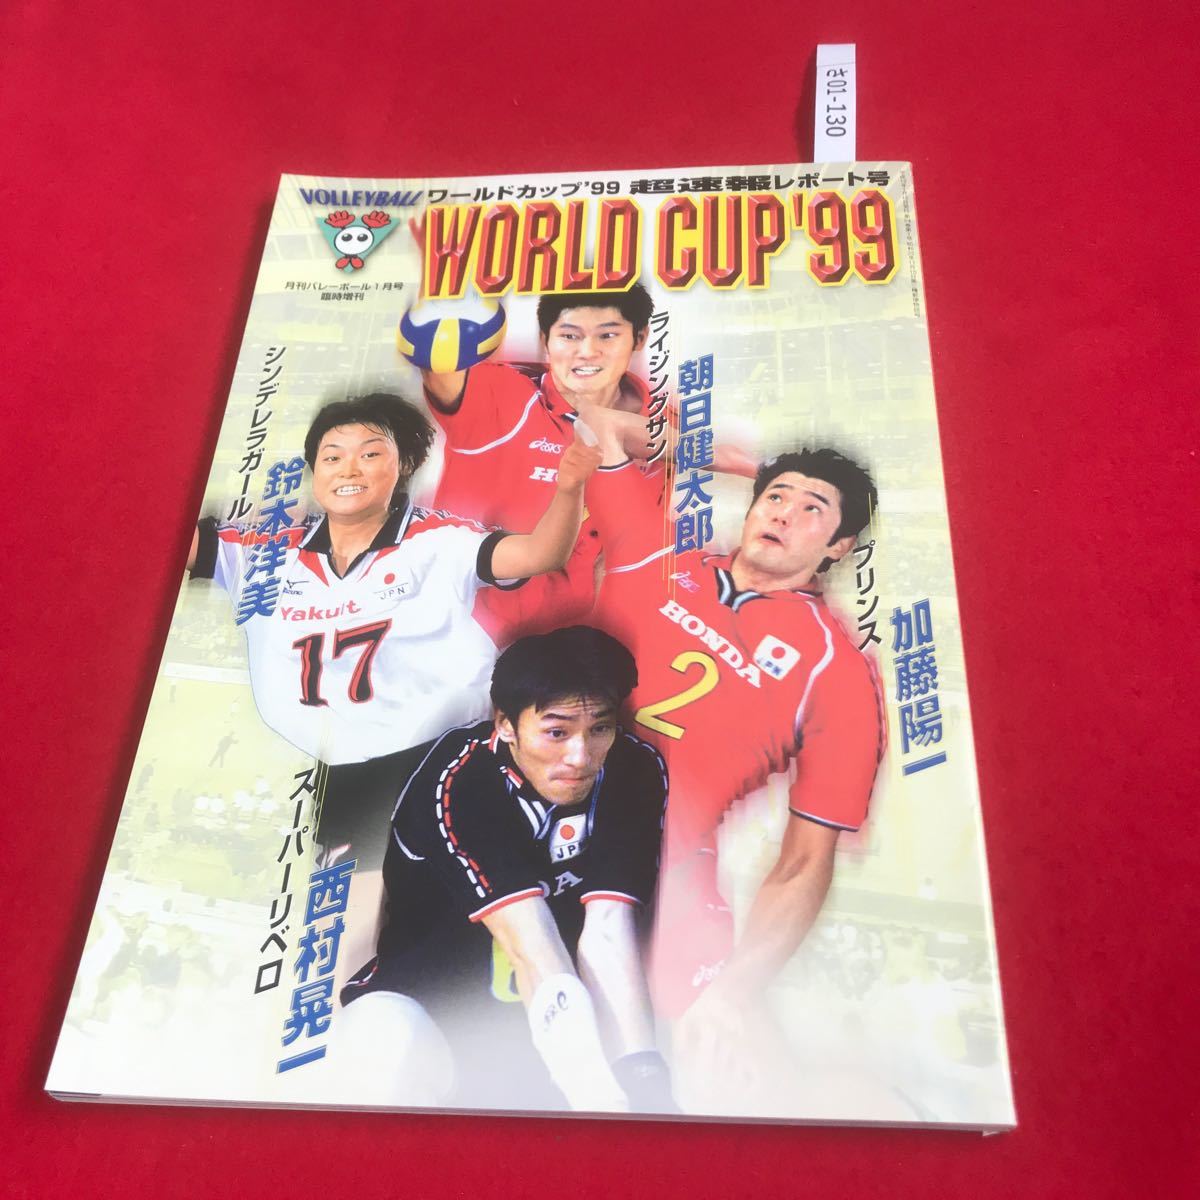 さ01-130 月刊バレーボール 1月号臨時増刊 ワールドカップ99 超速報レポート号 日本文化出版 1999年 スポーツ誌_画像1